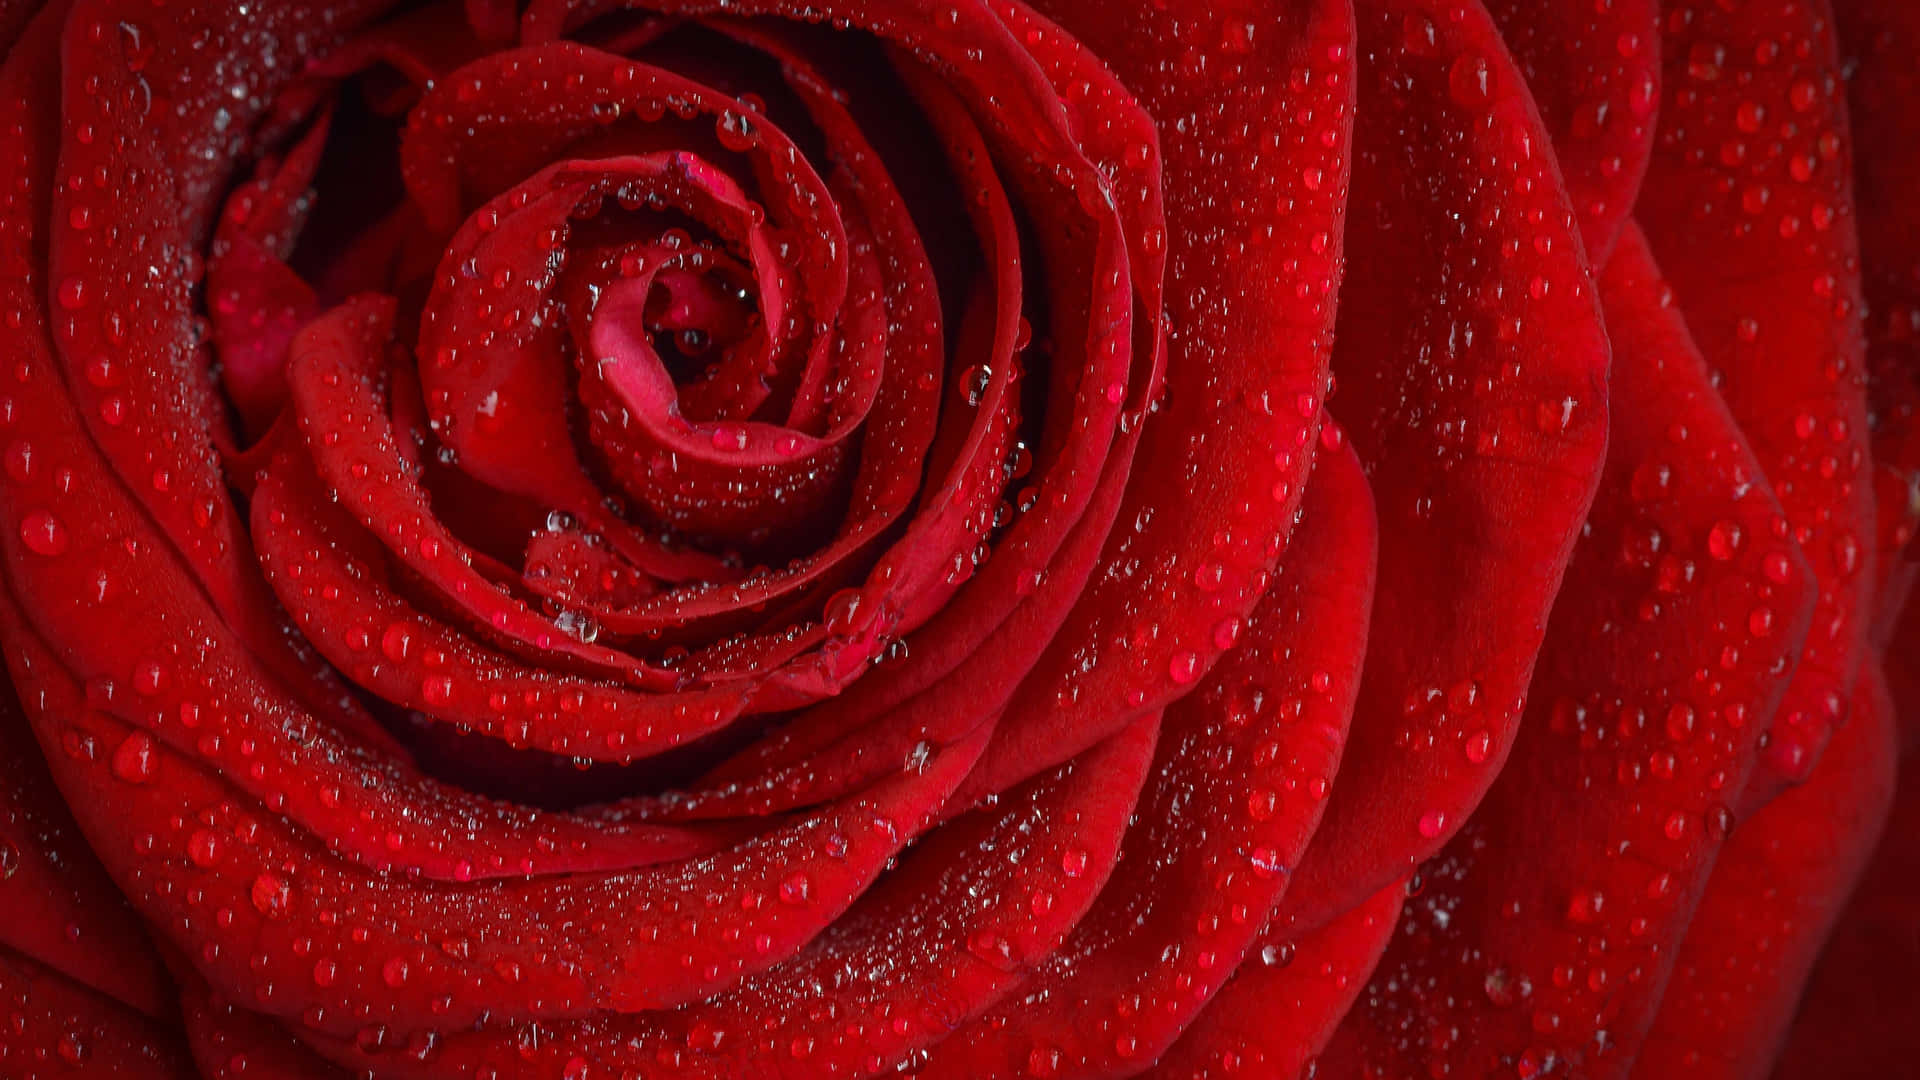 1440paufnahme Von Oben - Rote Rose Mit Wassertropfen Als Hintergrund